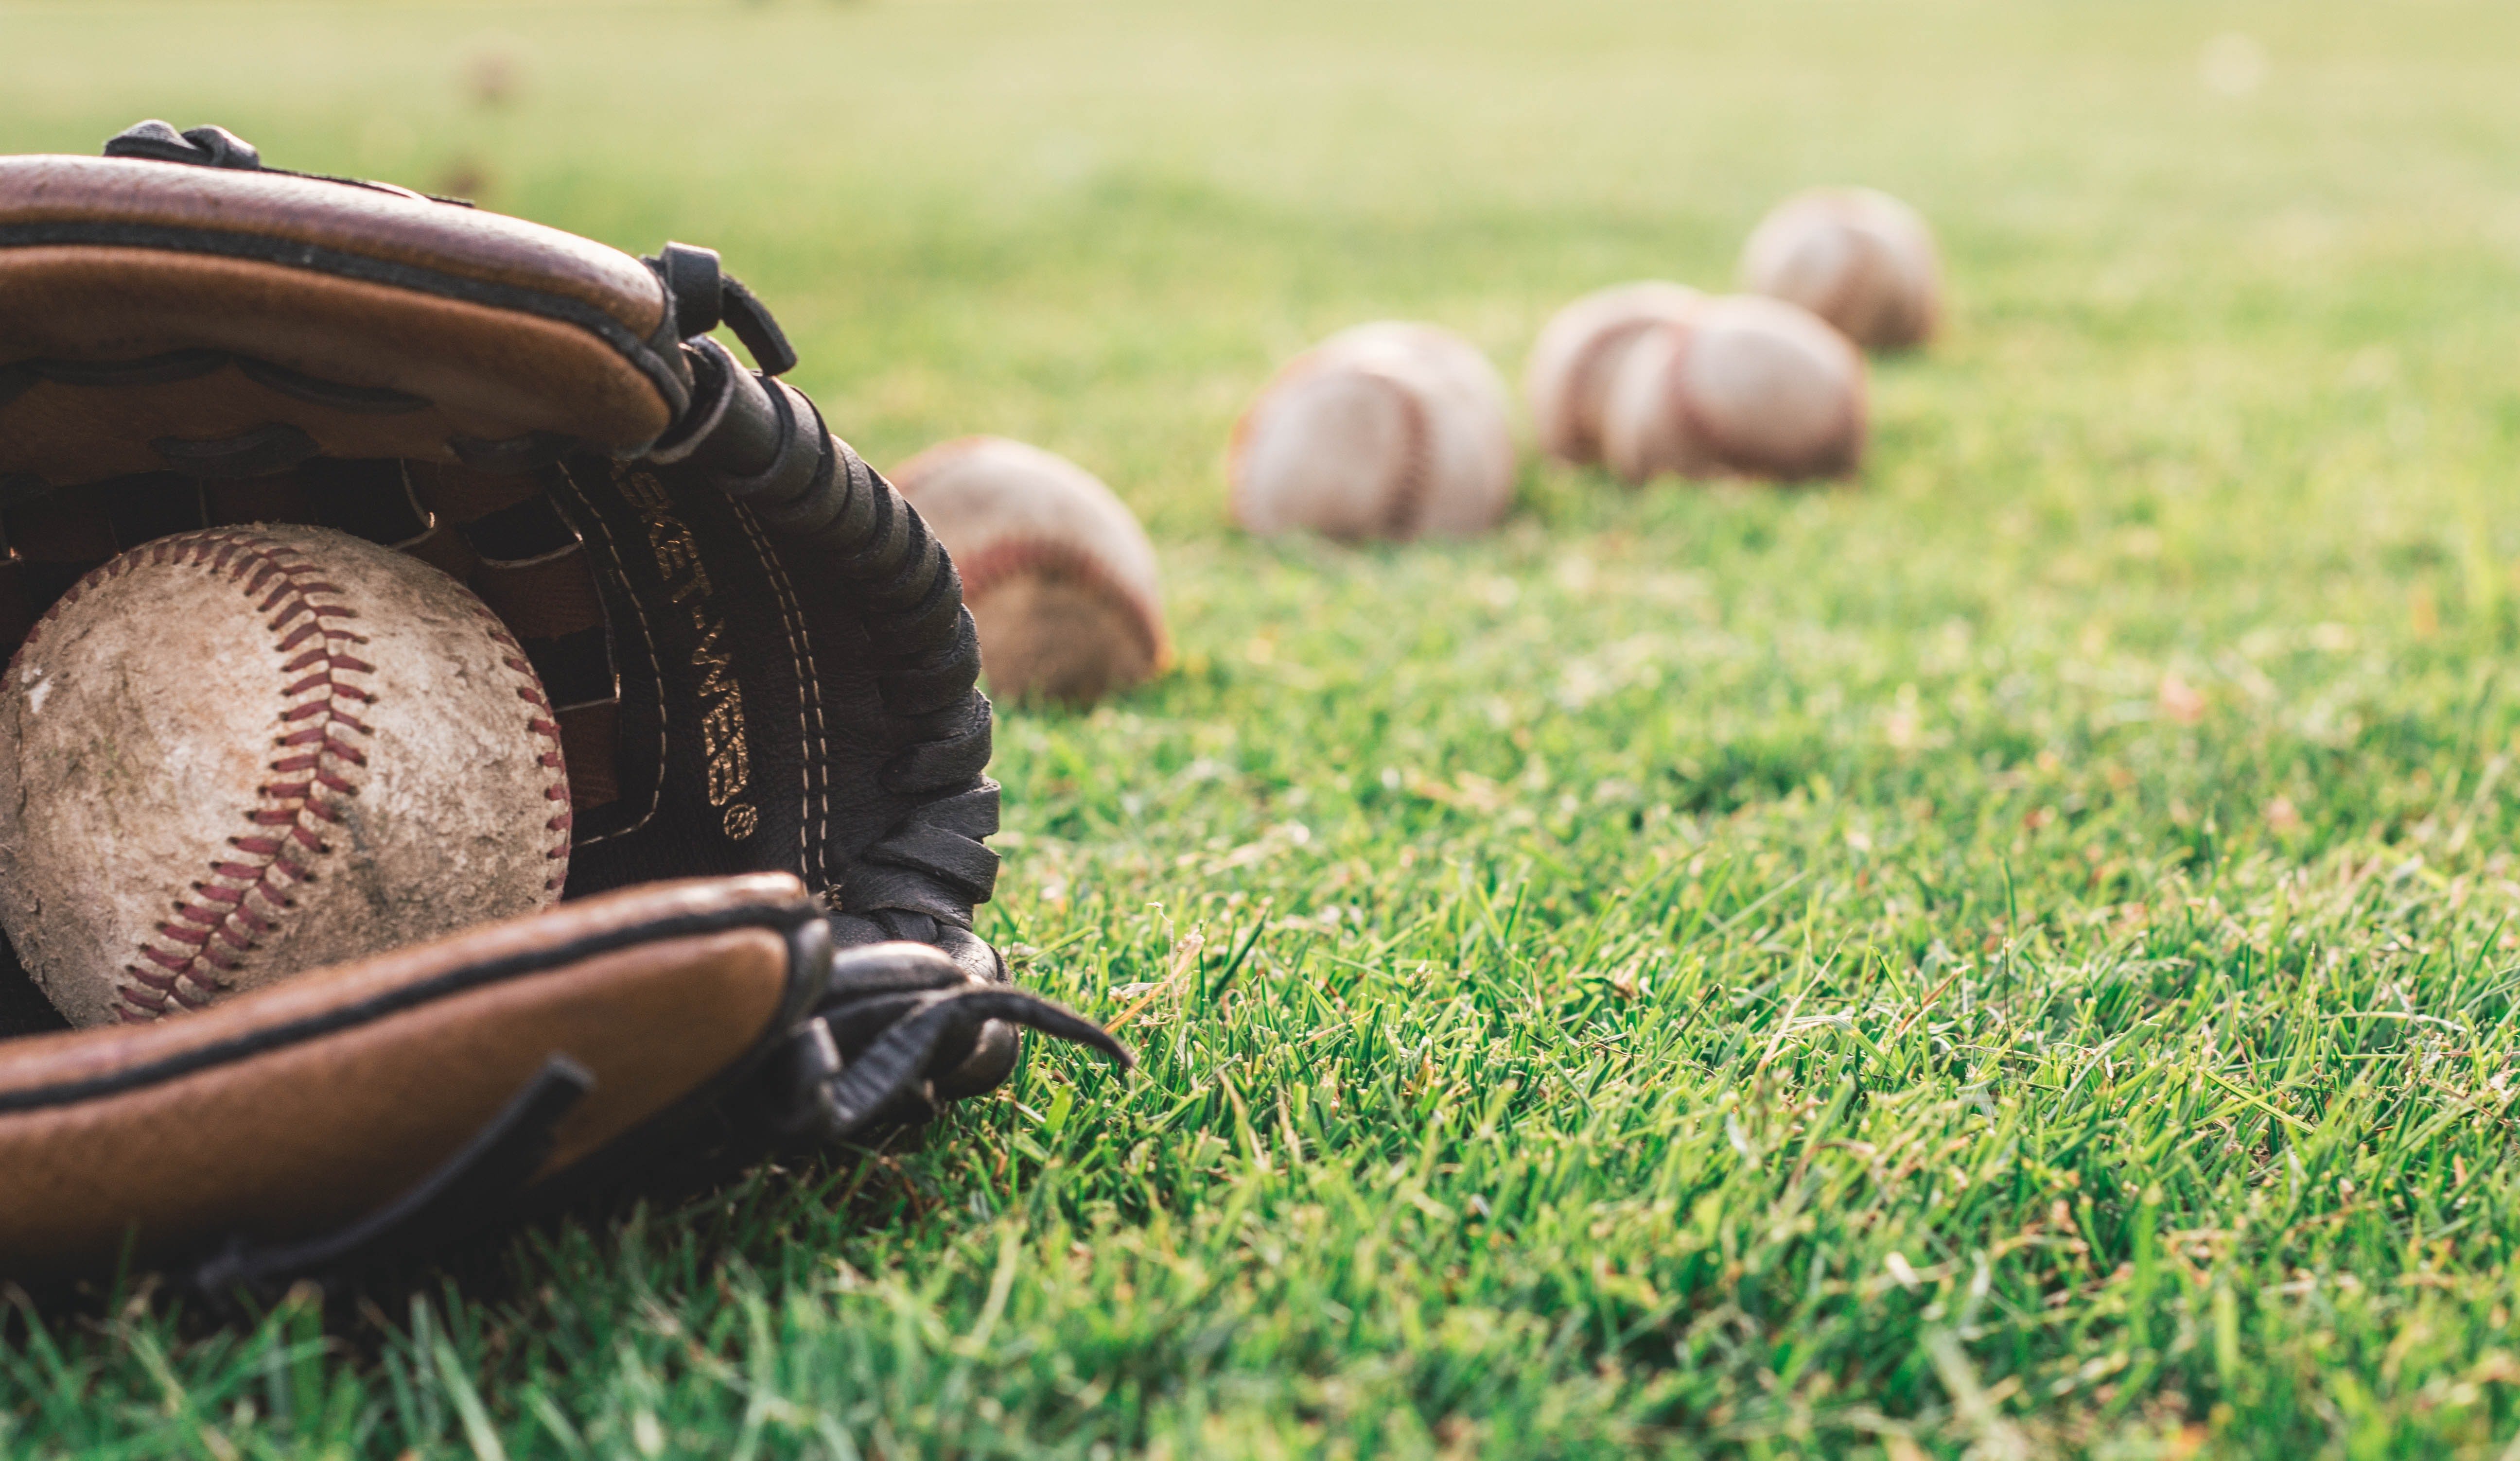 Jeden Nachmittag spielte eine Gruppe Kinder im Park Baseball. | Quelle: Pexels